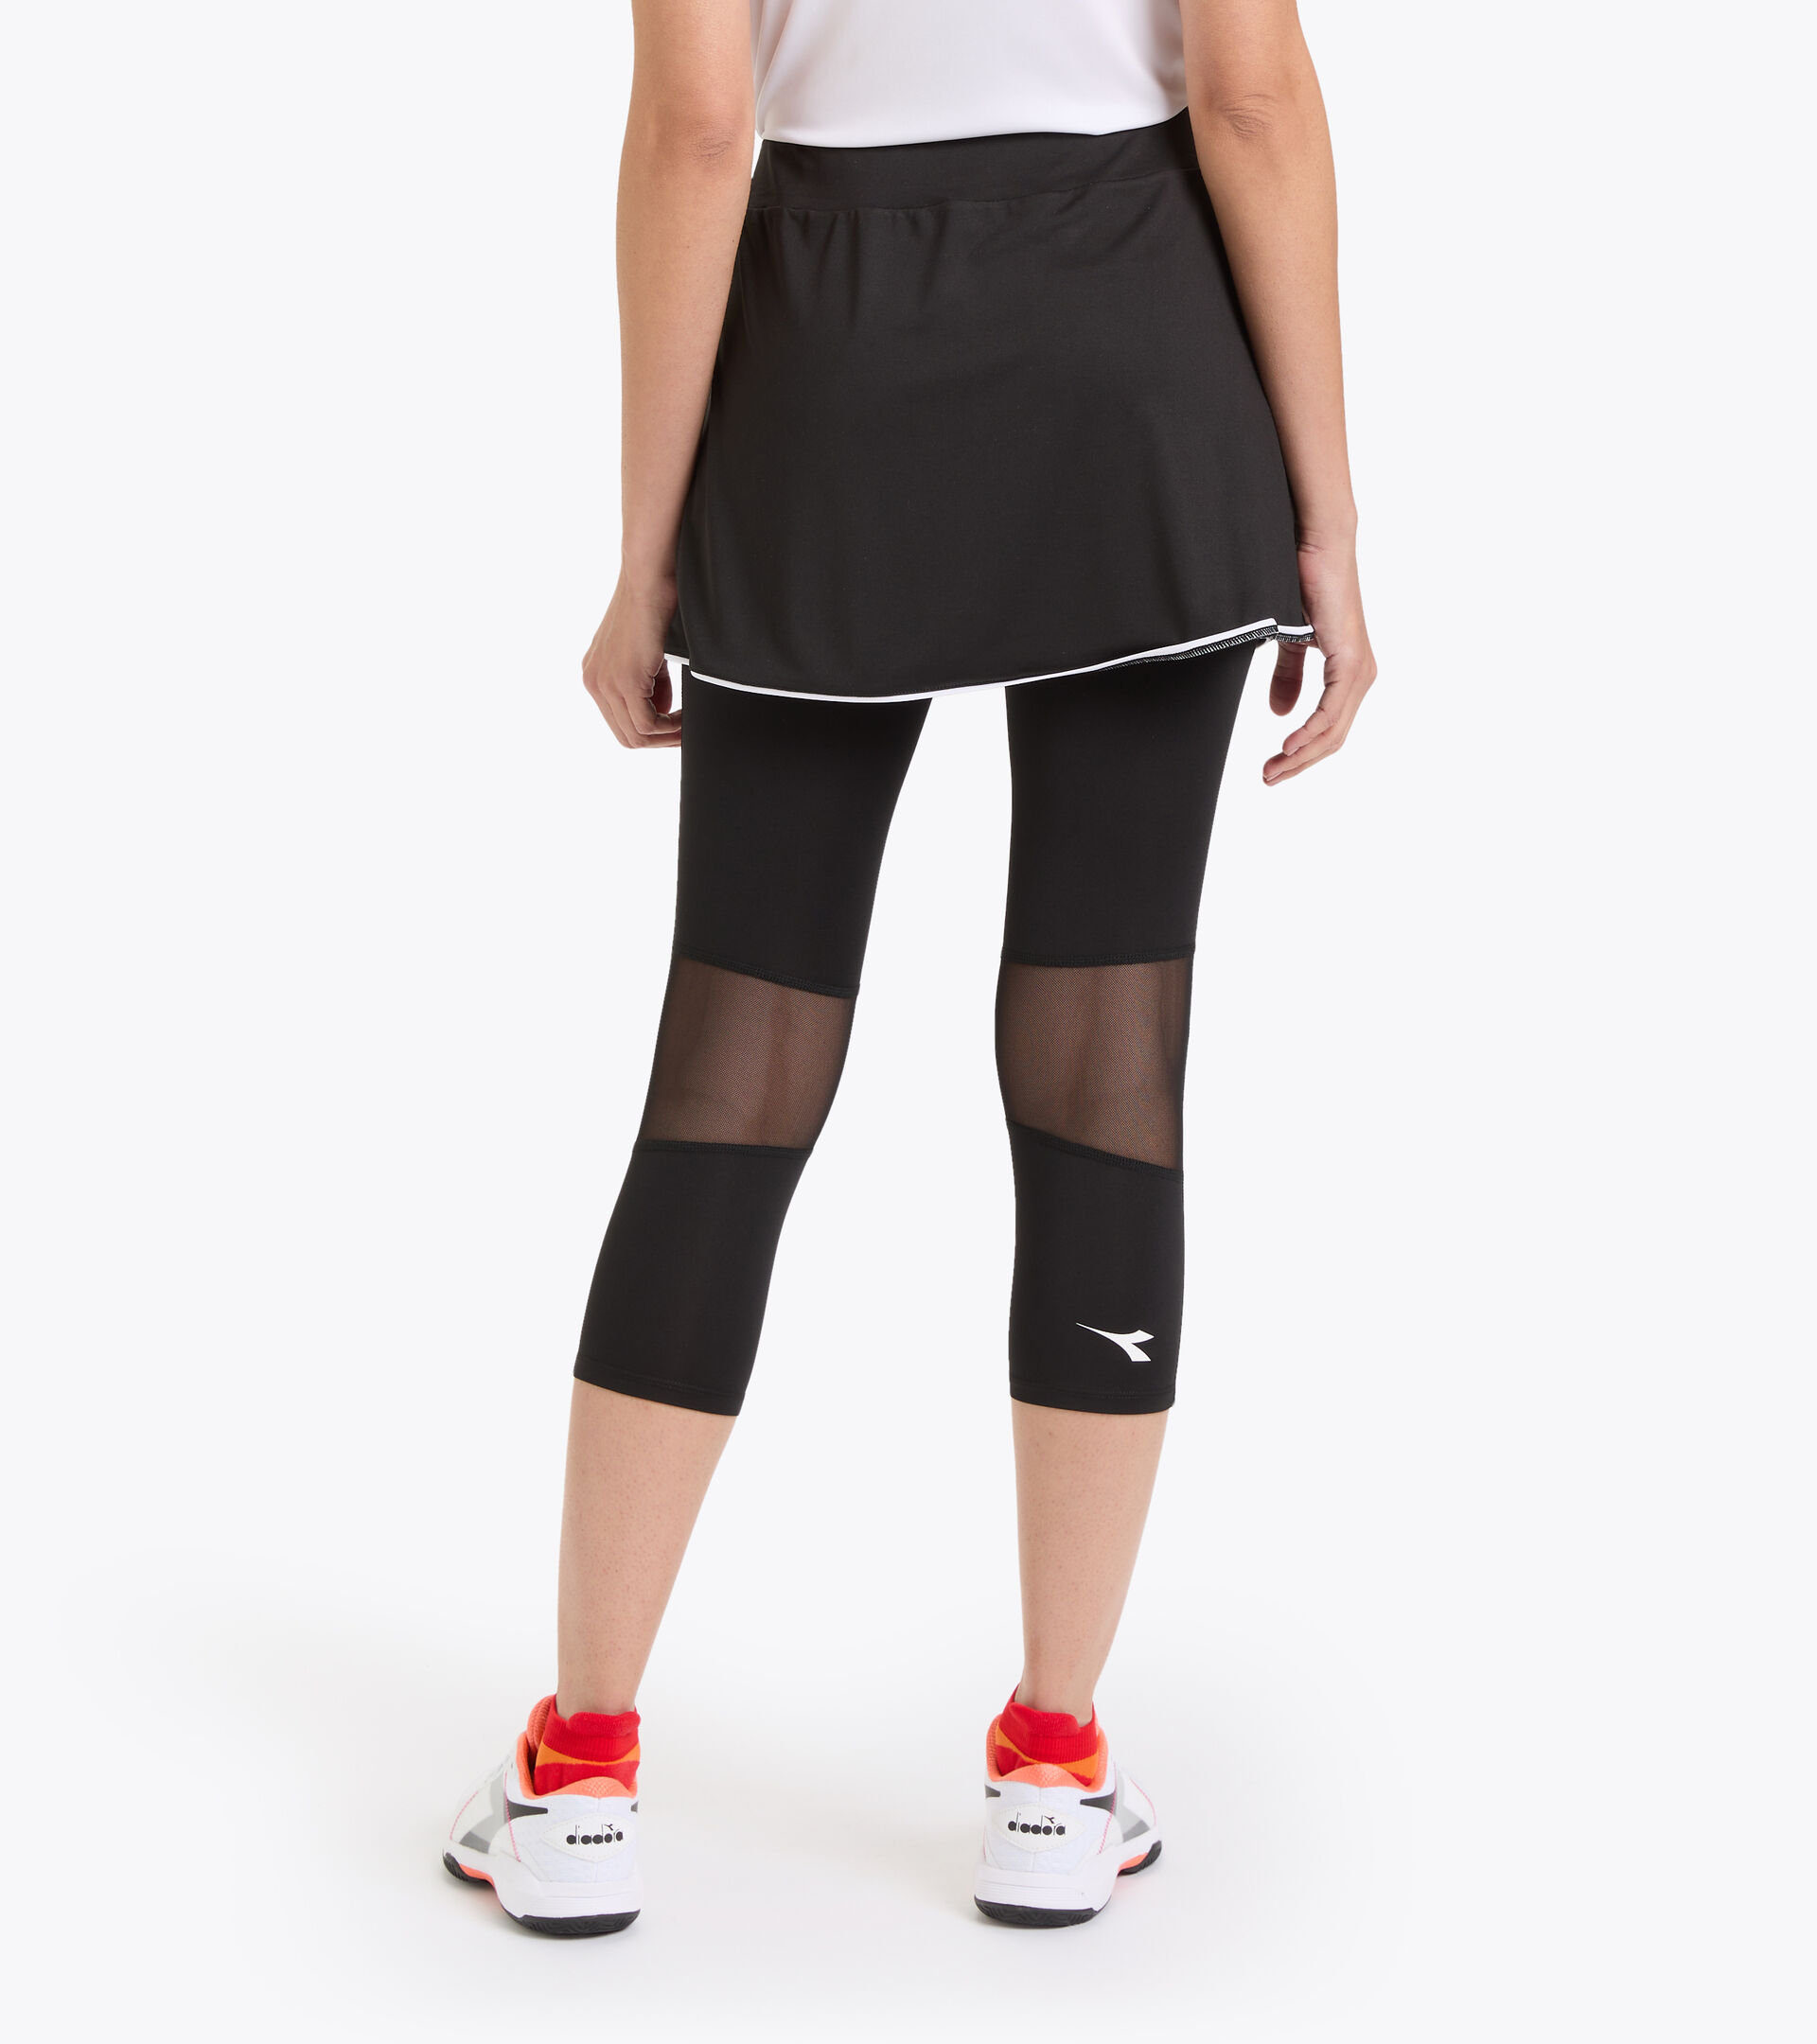 L. POWER SKIRT Polyester tennis skirt - Women - Diadora Online Store DK